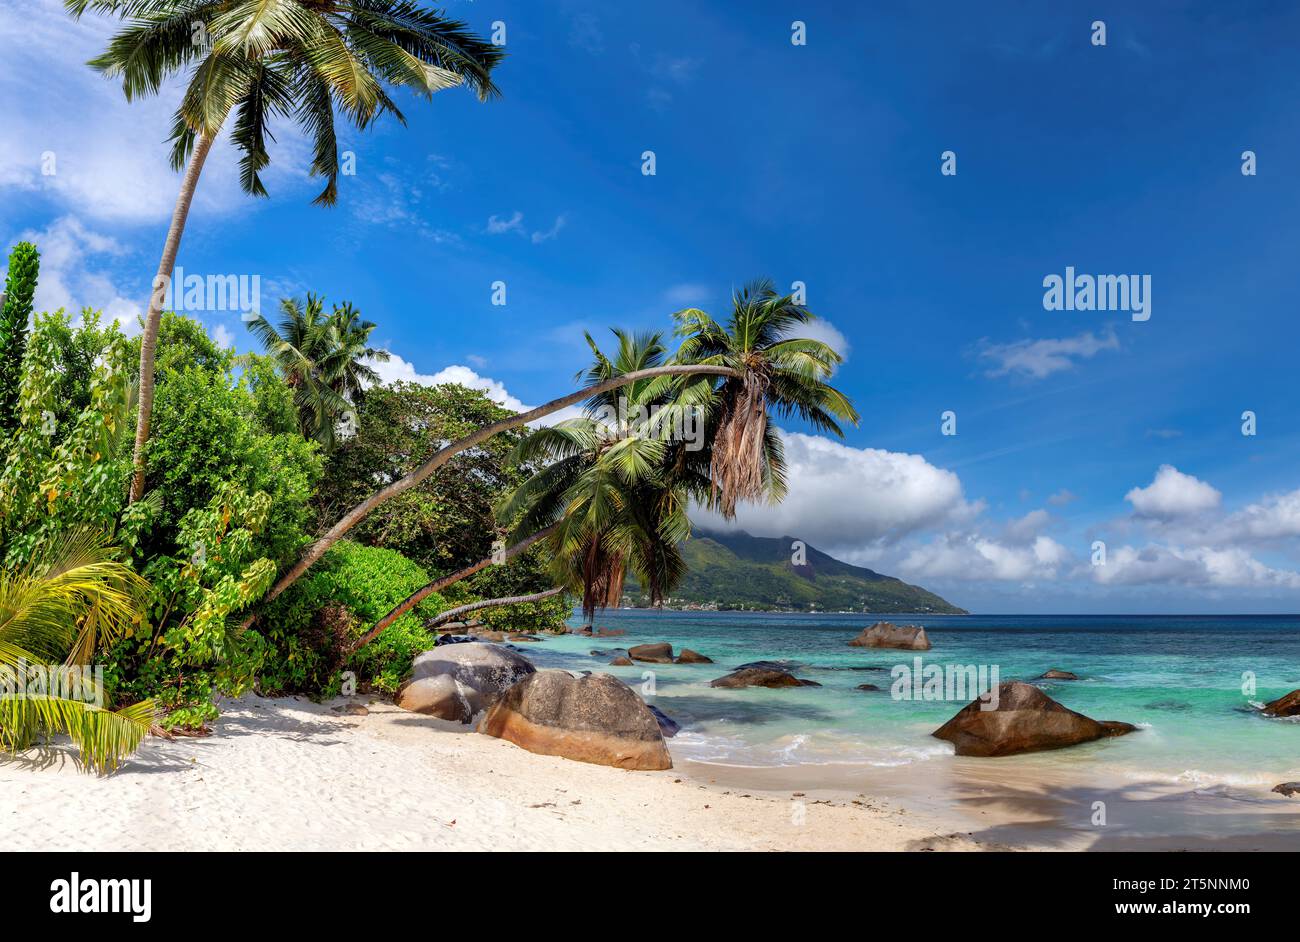 Spiaggia esotica, palme da cocco e splendido mare con rocce sulla spiaggia di Beau Vallon, isola di Mahe, Seychelles. Foto Stock